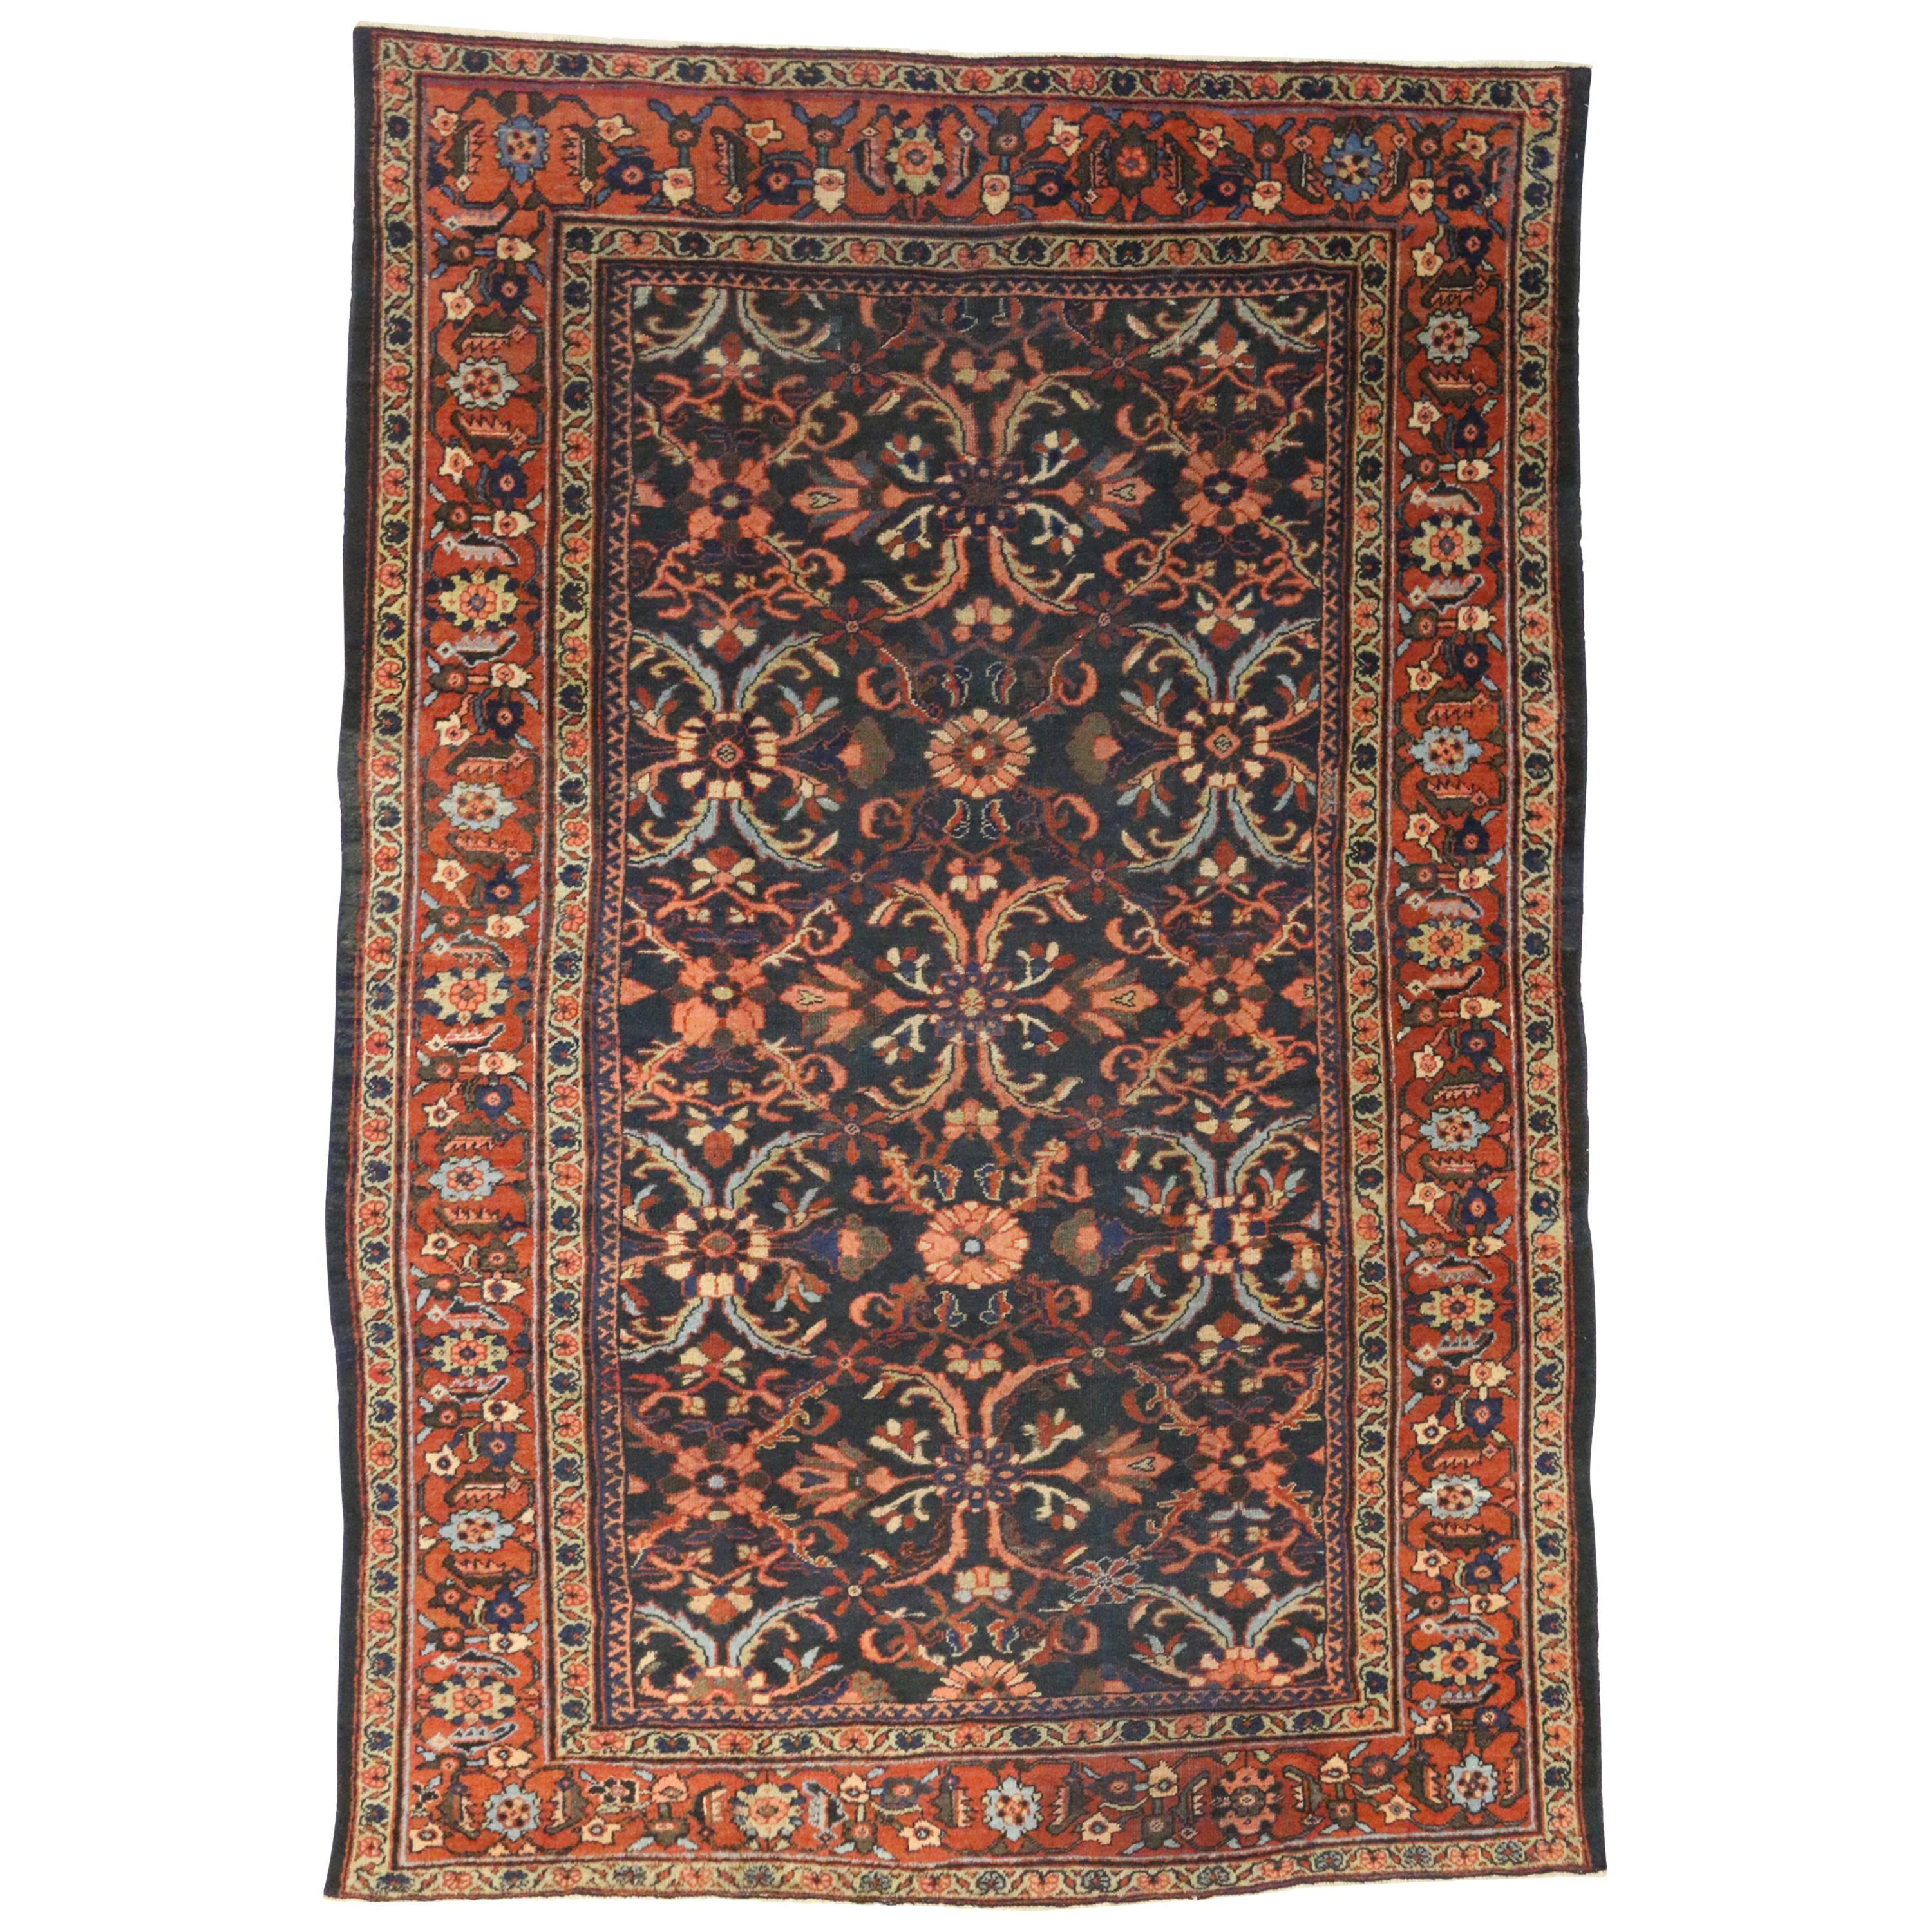 72100 Antiker persischer Mahal-Teppich mit Mina Khani-Muster und Arts & Crafts-Stil 08'07 x 12'08. Dieser antike persische Mahal-Teppich aus handgeknüpfter Wolle zeigt ein lebhaftes florales Gittermuster, das aus einem sich wiederholenden